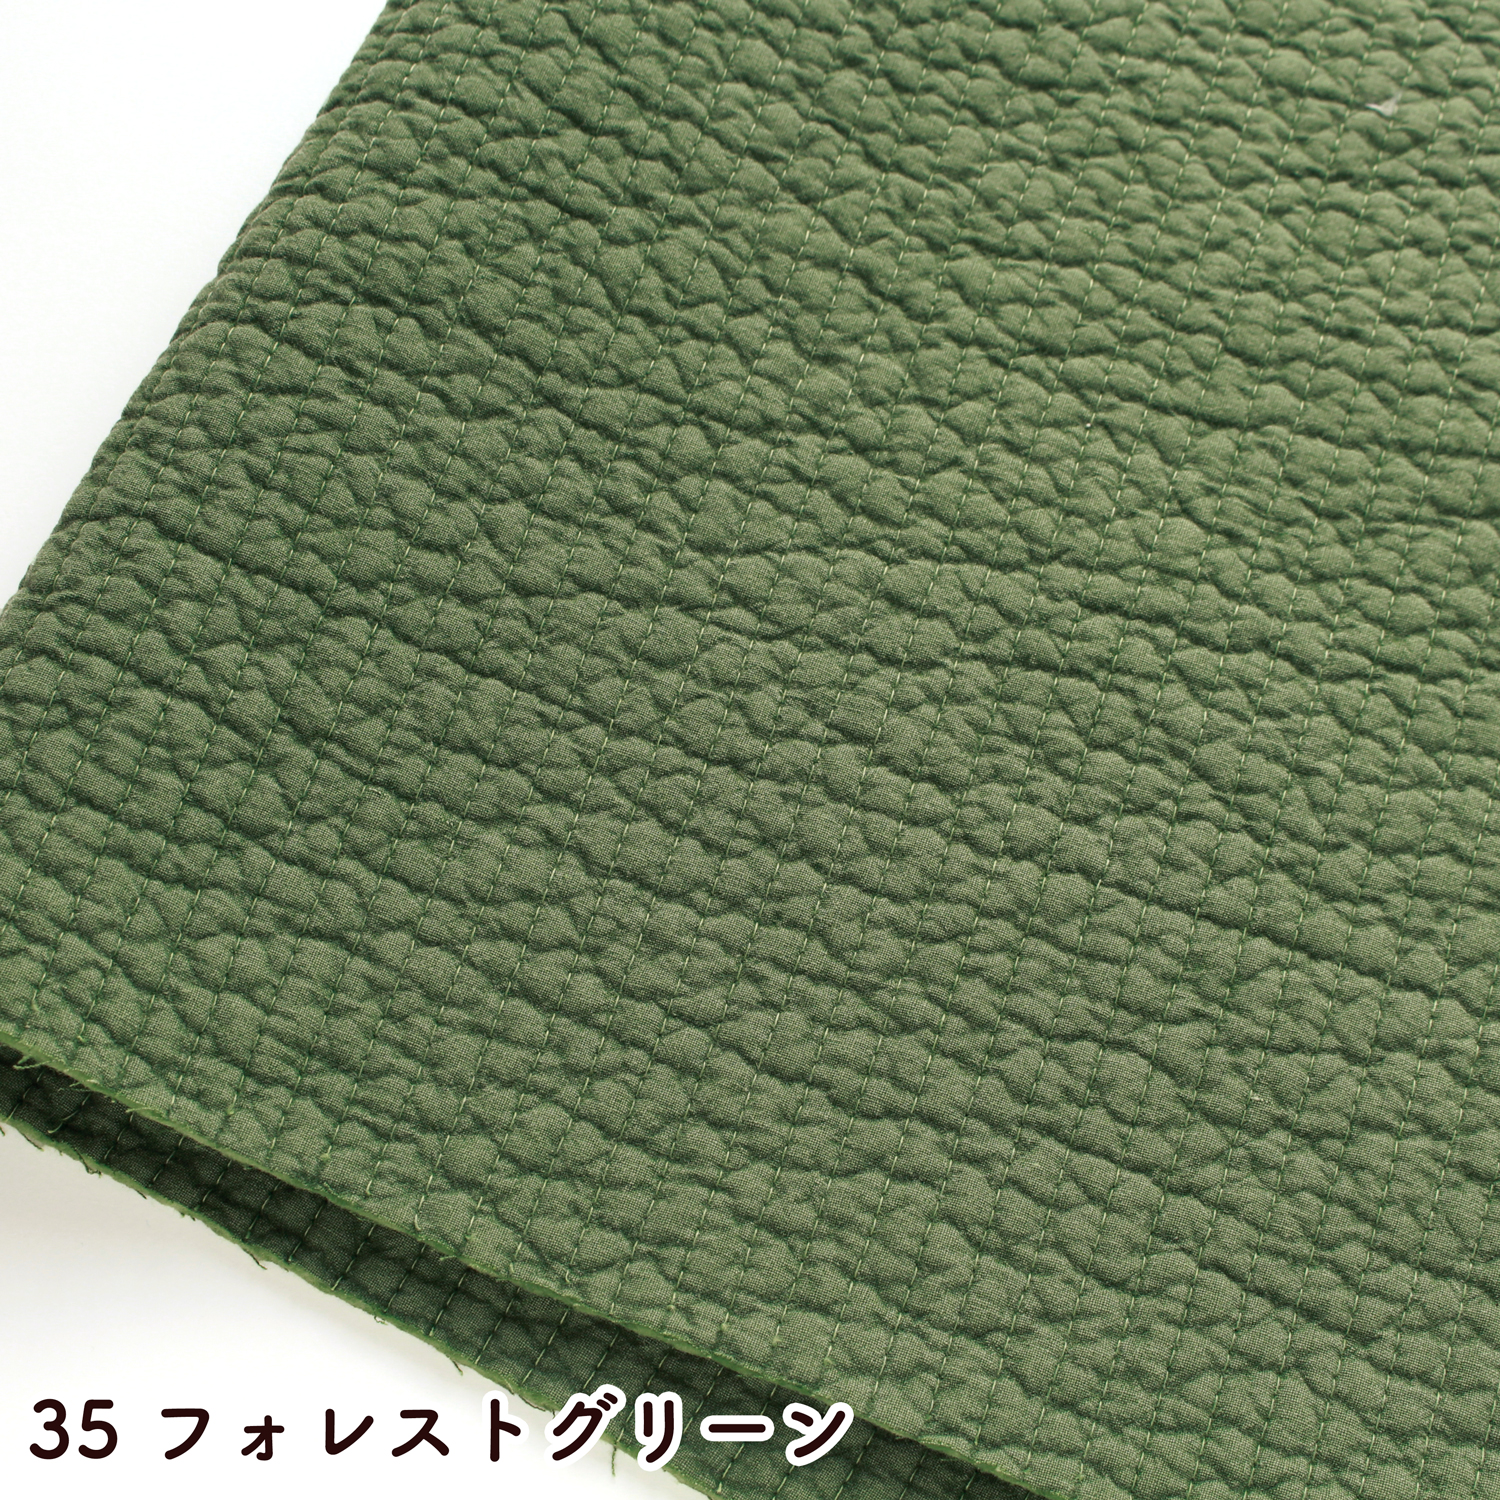 ■NBY307R nubi ヌビ 韓国伝統キルティング生地 巾7mmサイズ 約8m巻 (巻) 6